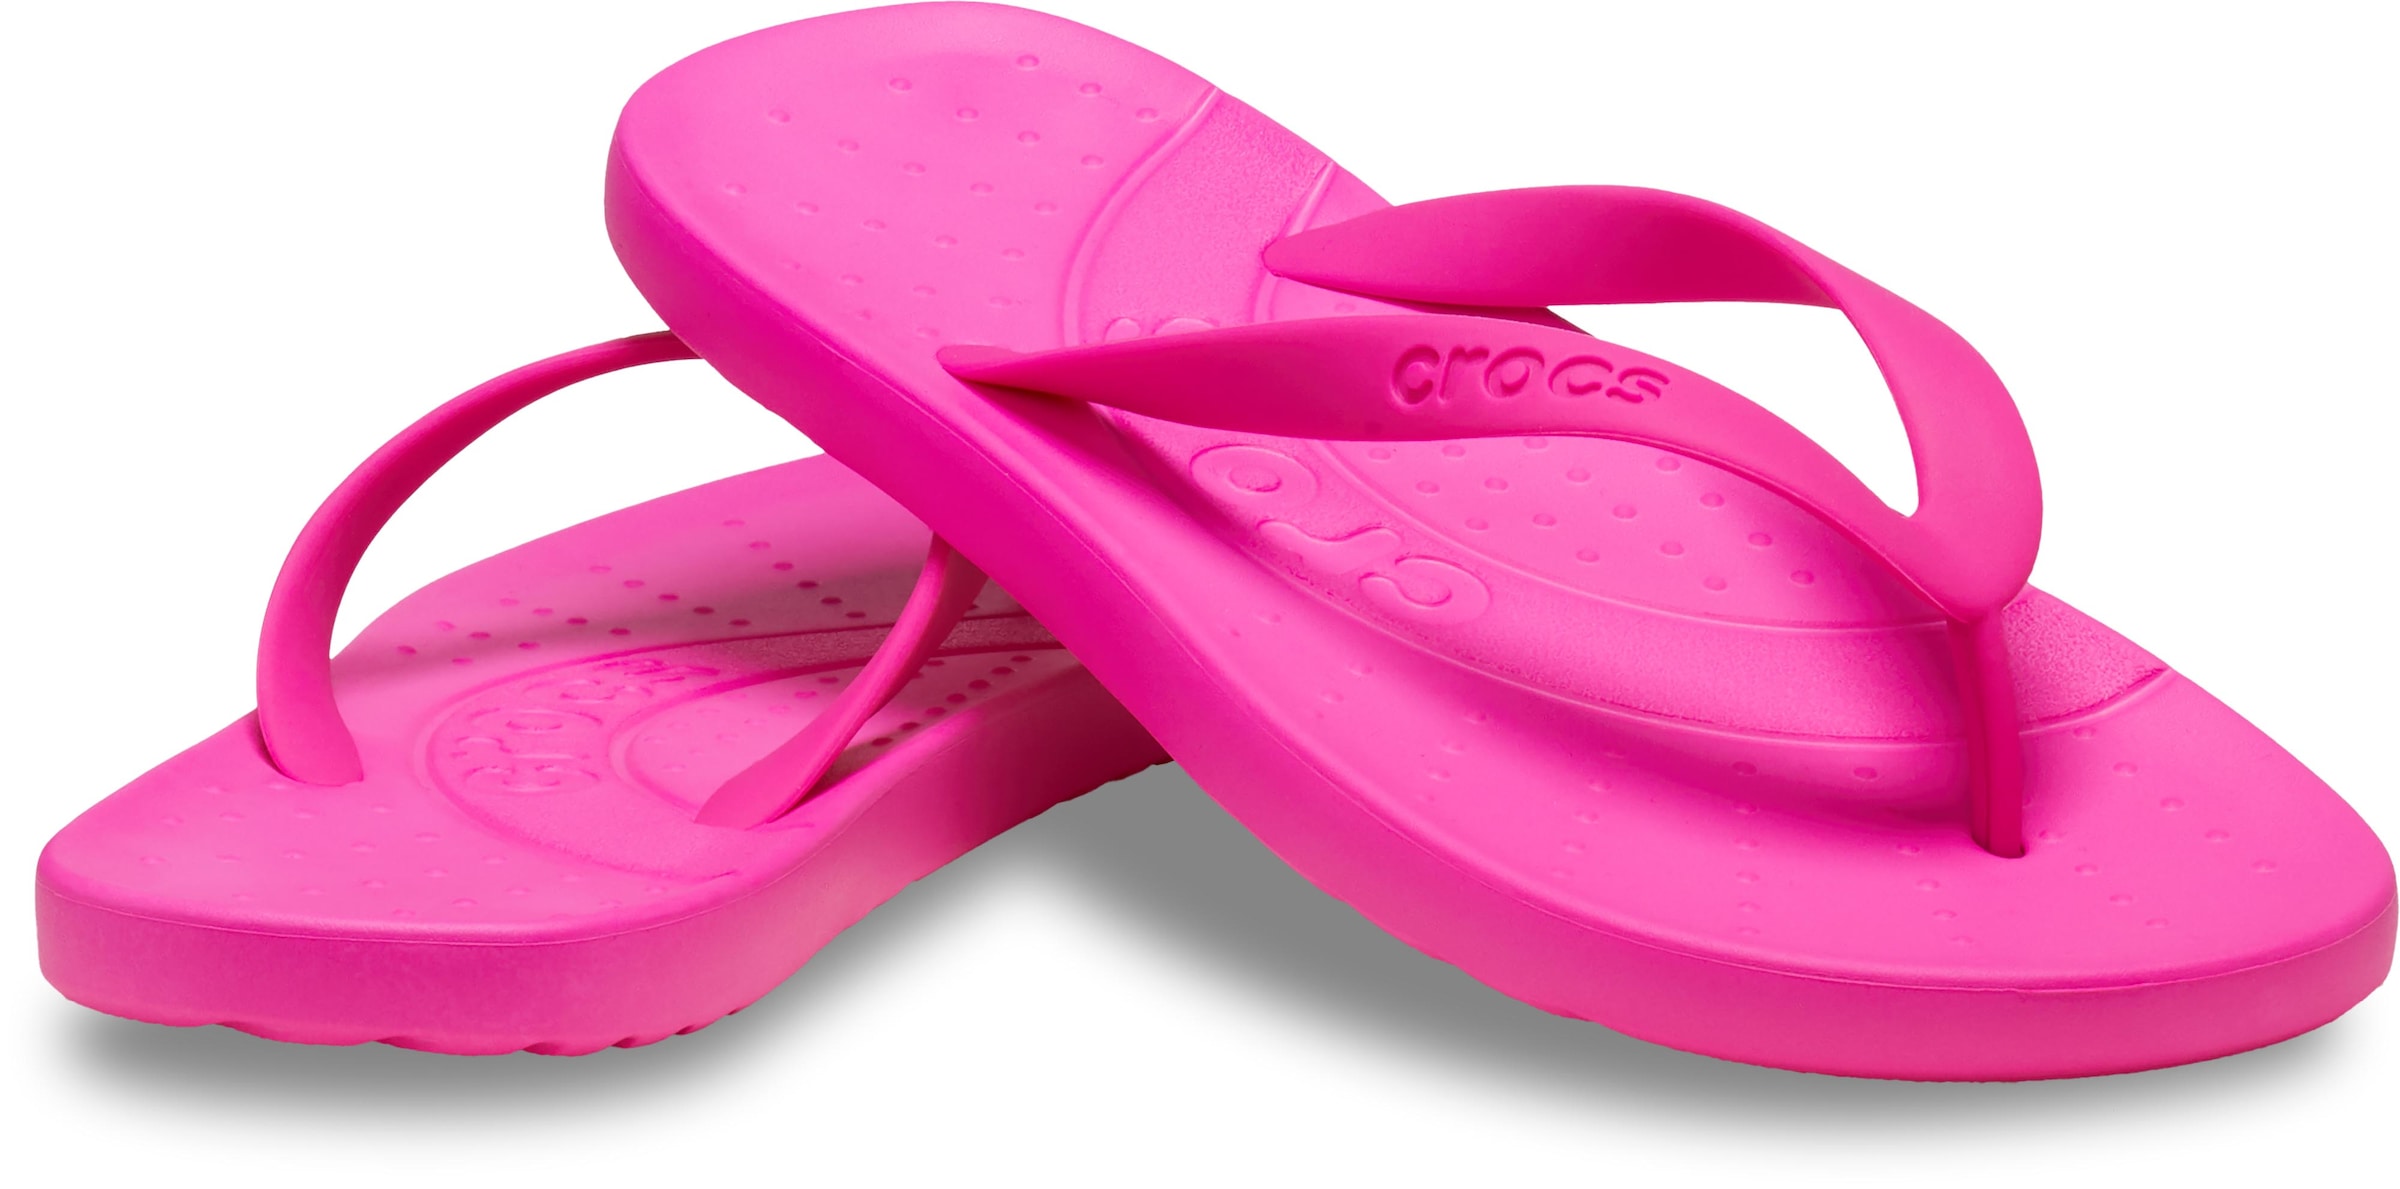 Crocs Zehentrenner "Crocs Flip", Badeschuh, Sandale, Sommerschuh mit weichem Zehensteg